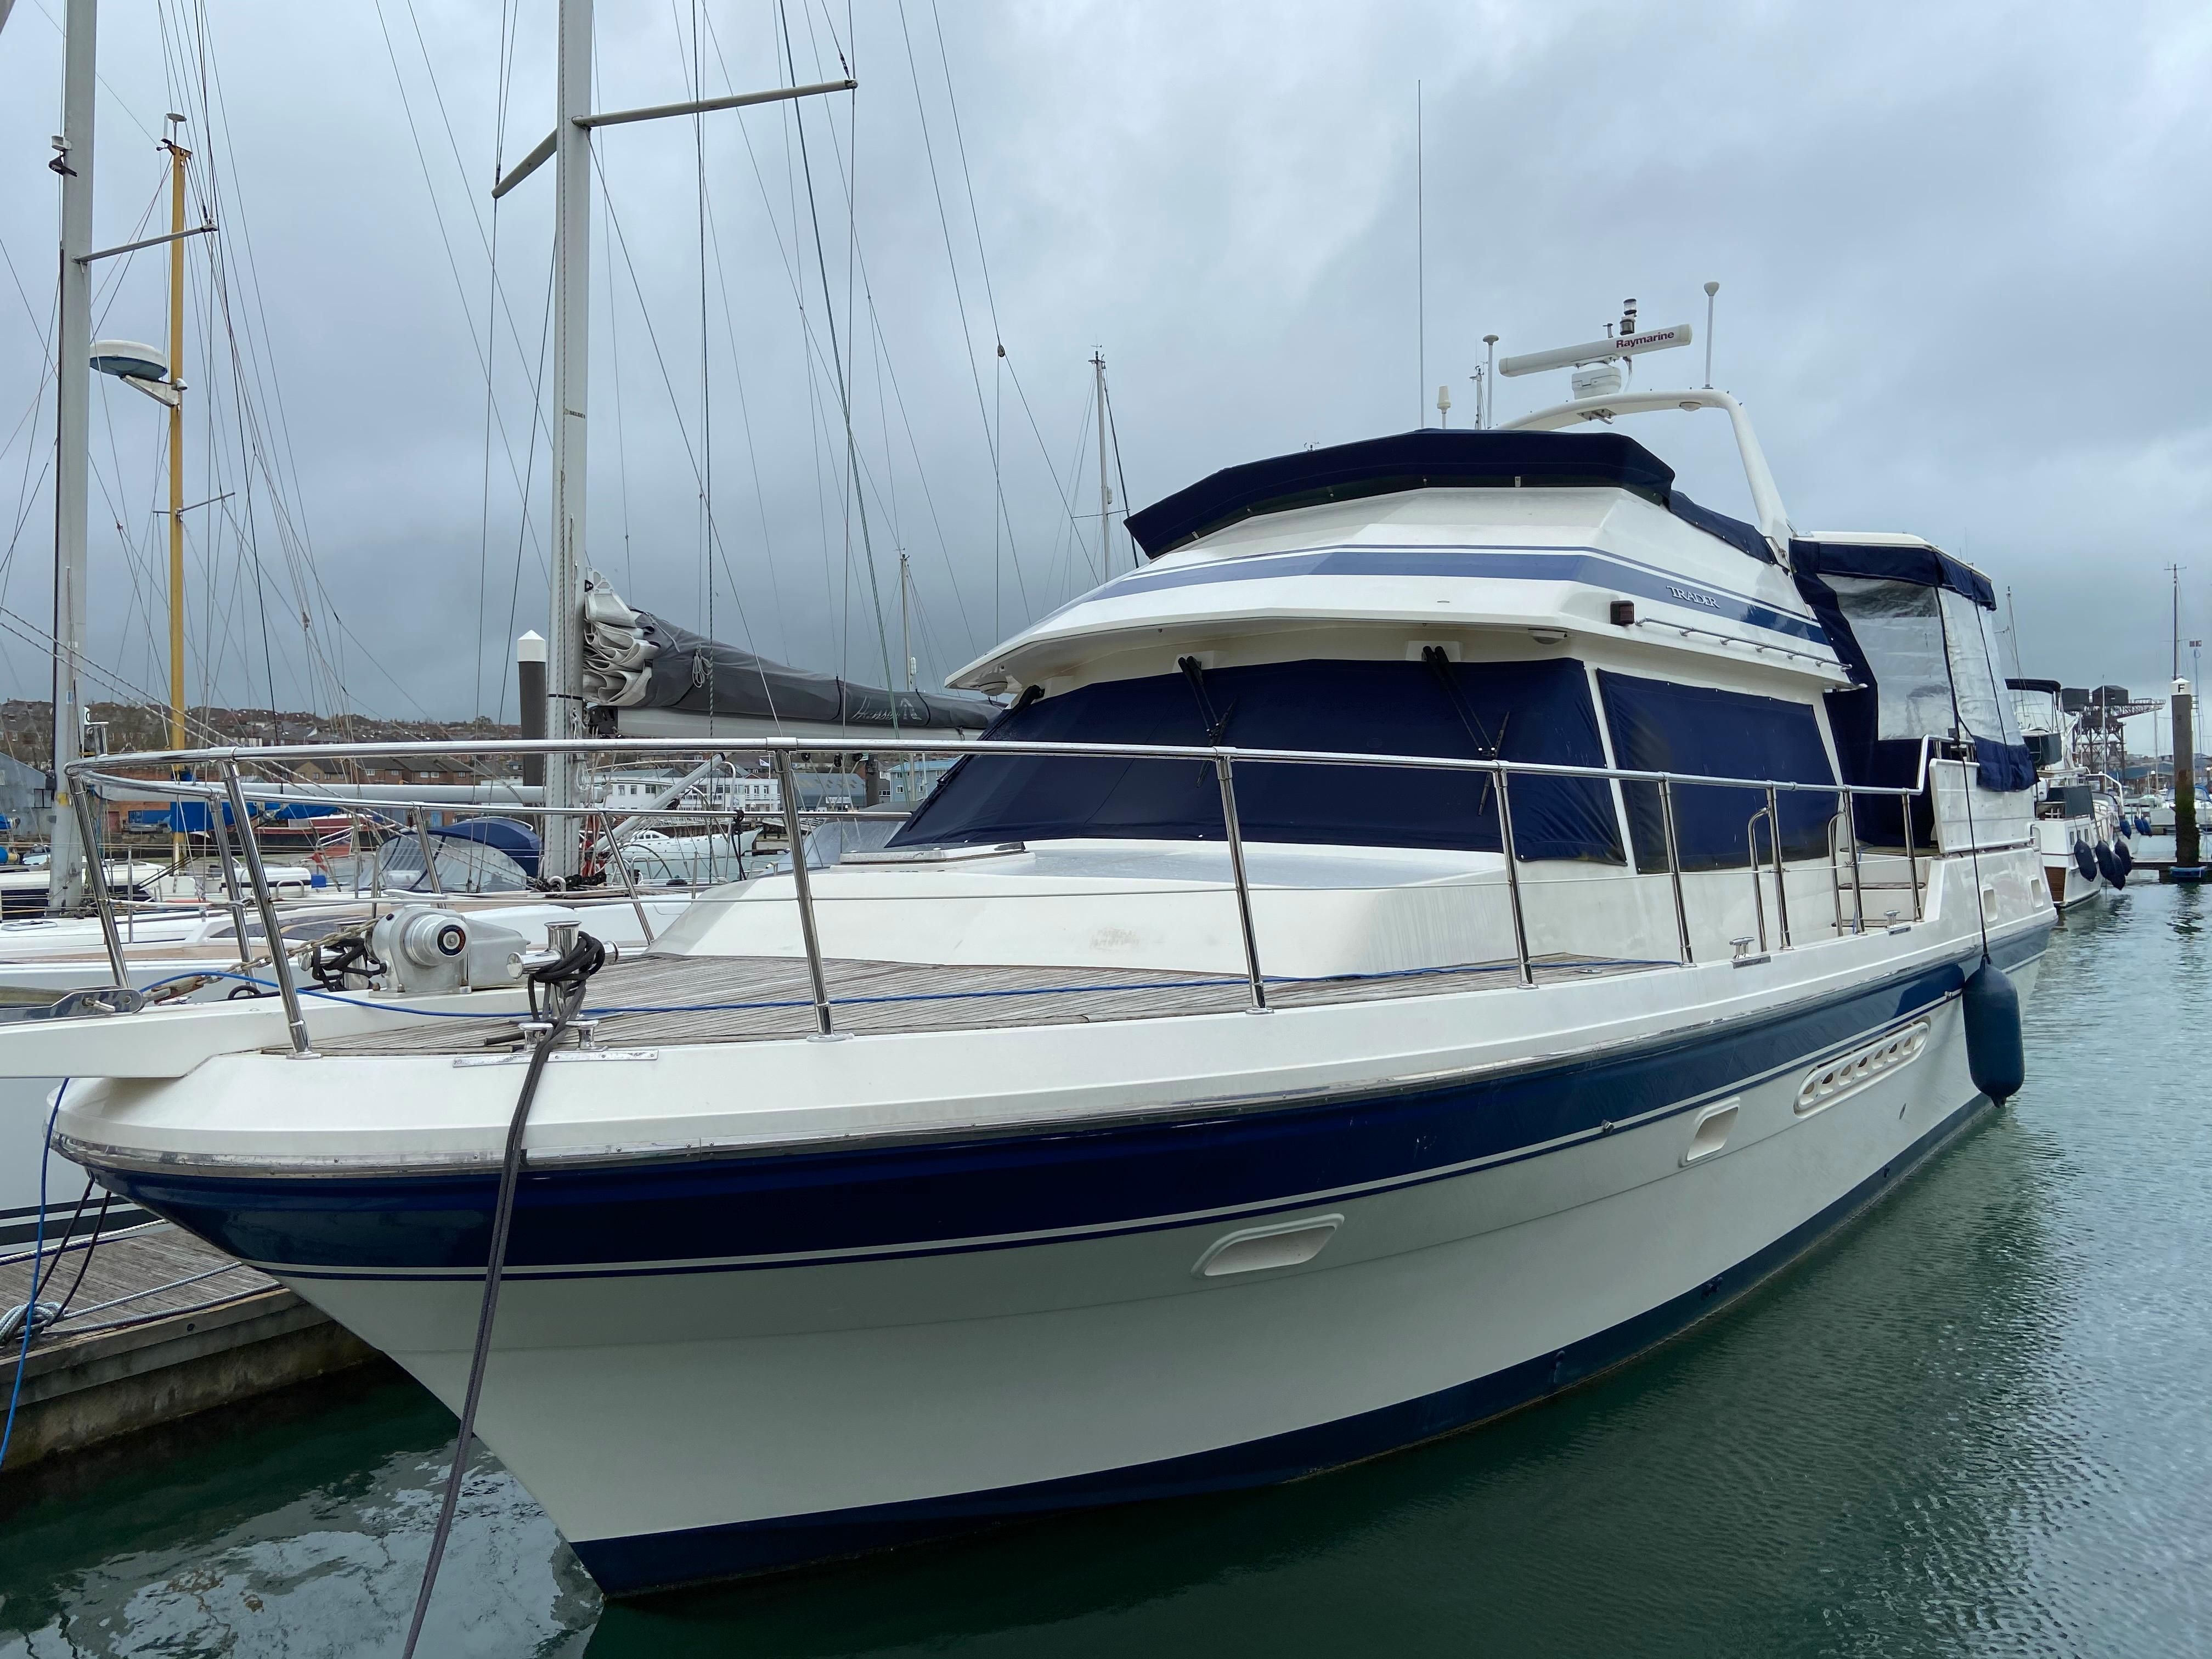 trader motor yachts for sale uk